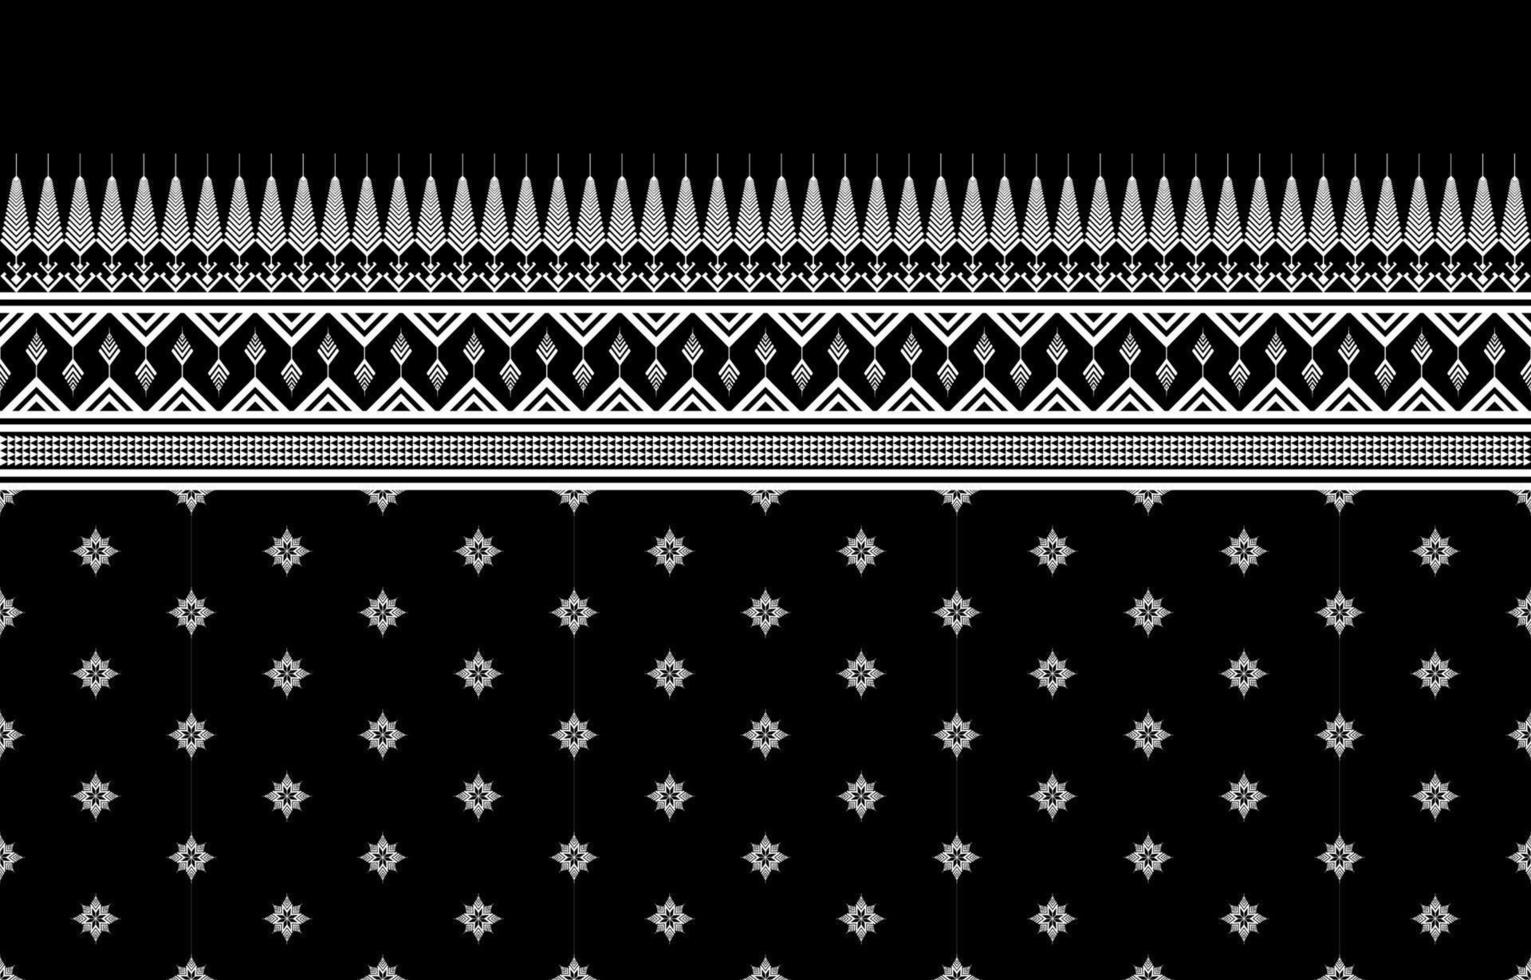 geometrische etnische patroon traditioneel ontwerp voor achtergrond,tapijt,behang,kleding,inwikkeling,batik,stof,sarong,illustratie,borduurwerk,stijl. vector